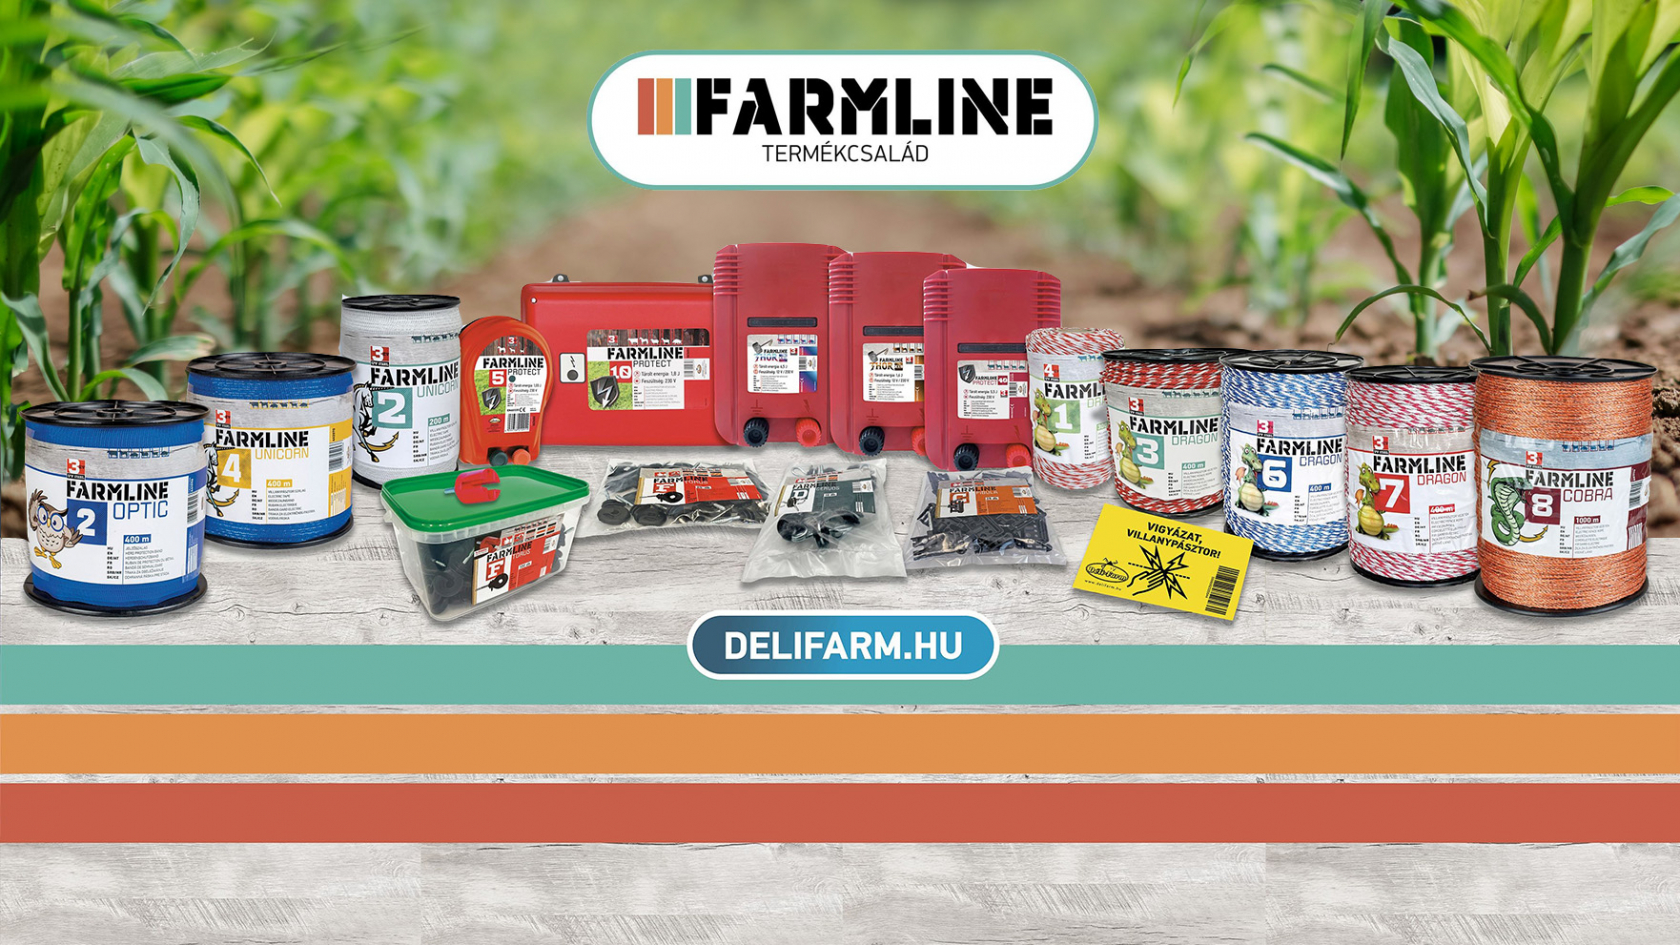 FarmLine villanypásztor termékcsalád